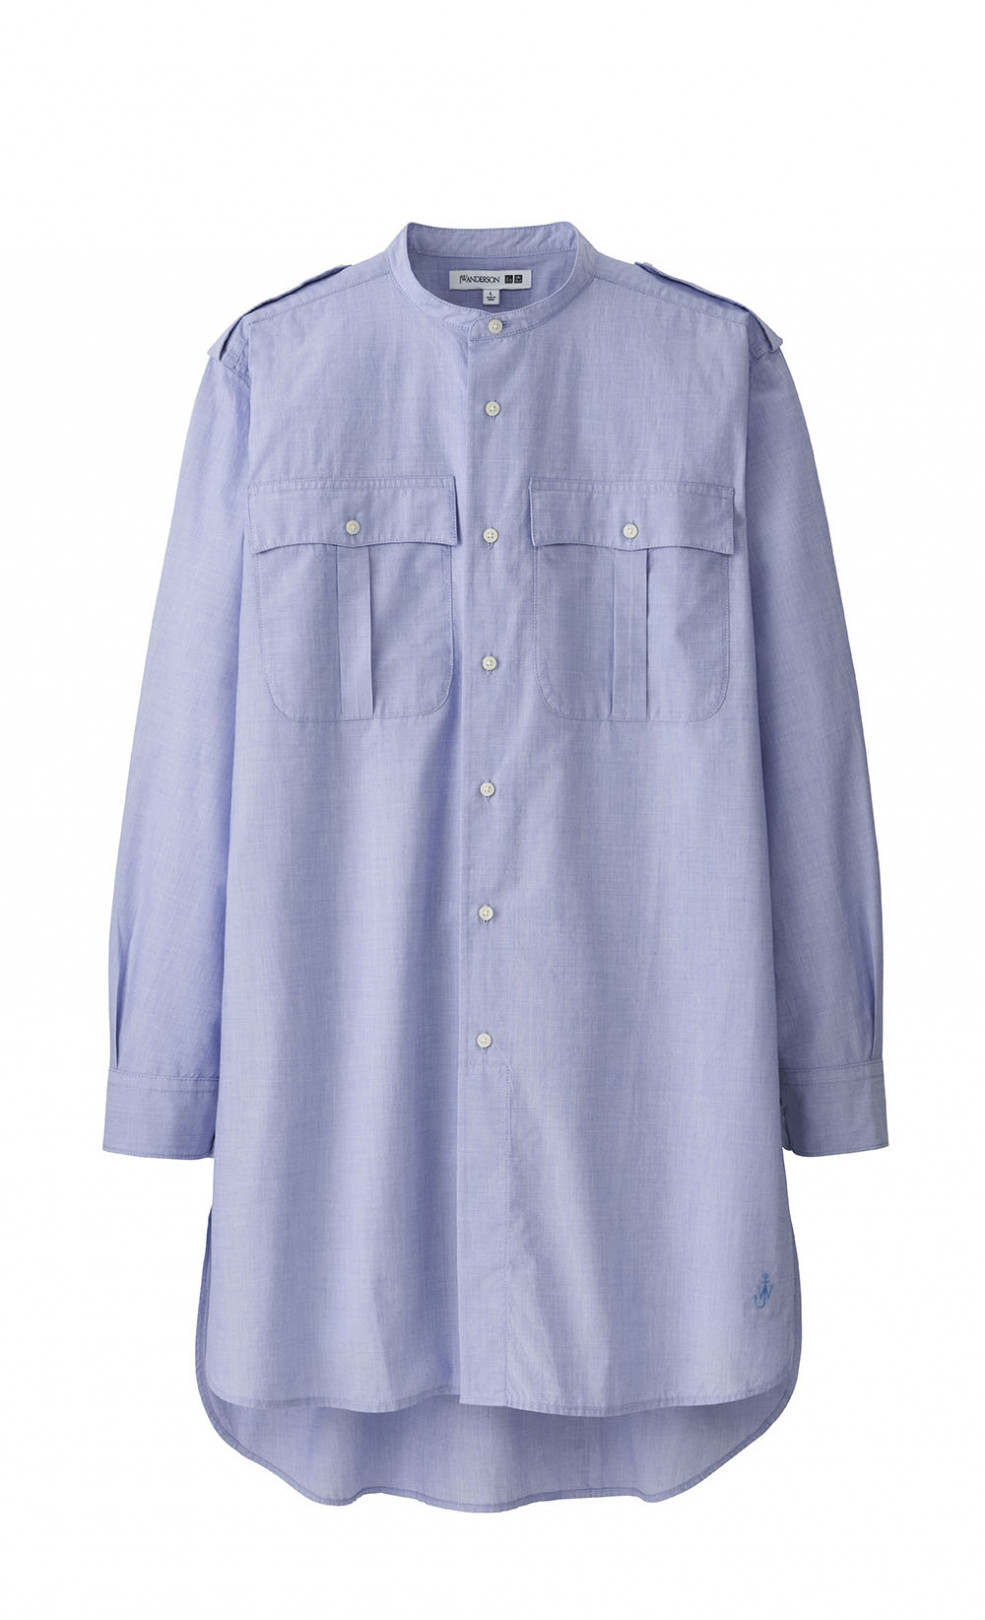 「UNIQLO and JW ANDERSON スタンドカラーロングシャツ(長袖)」3,990円